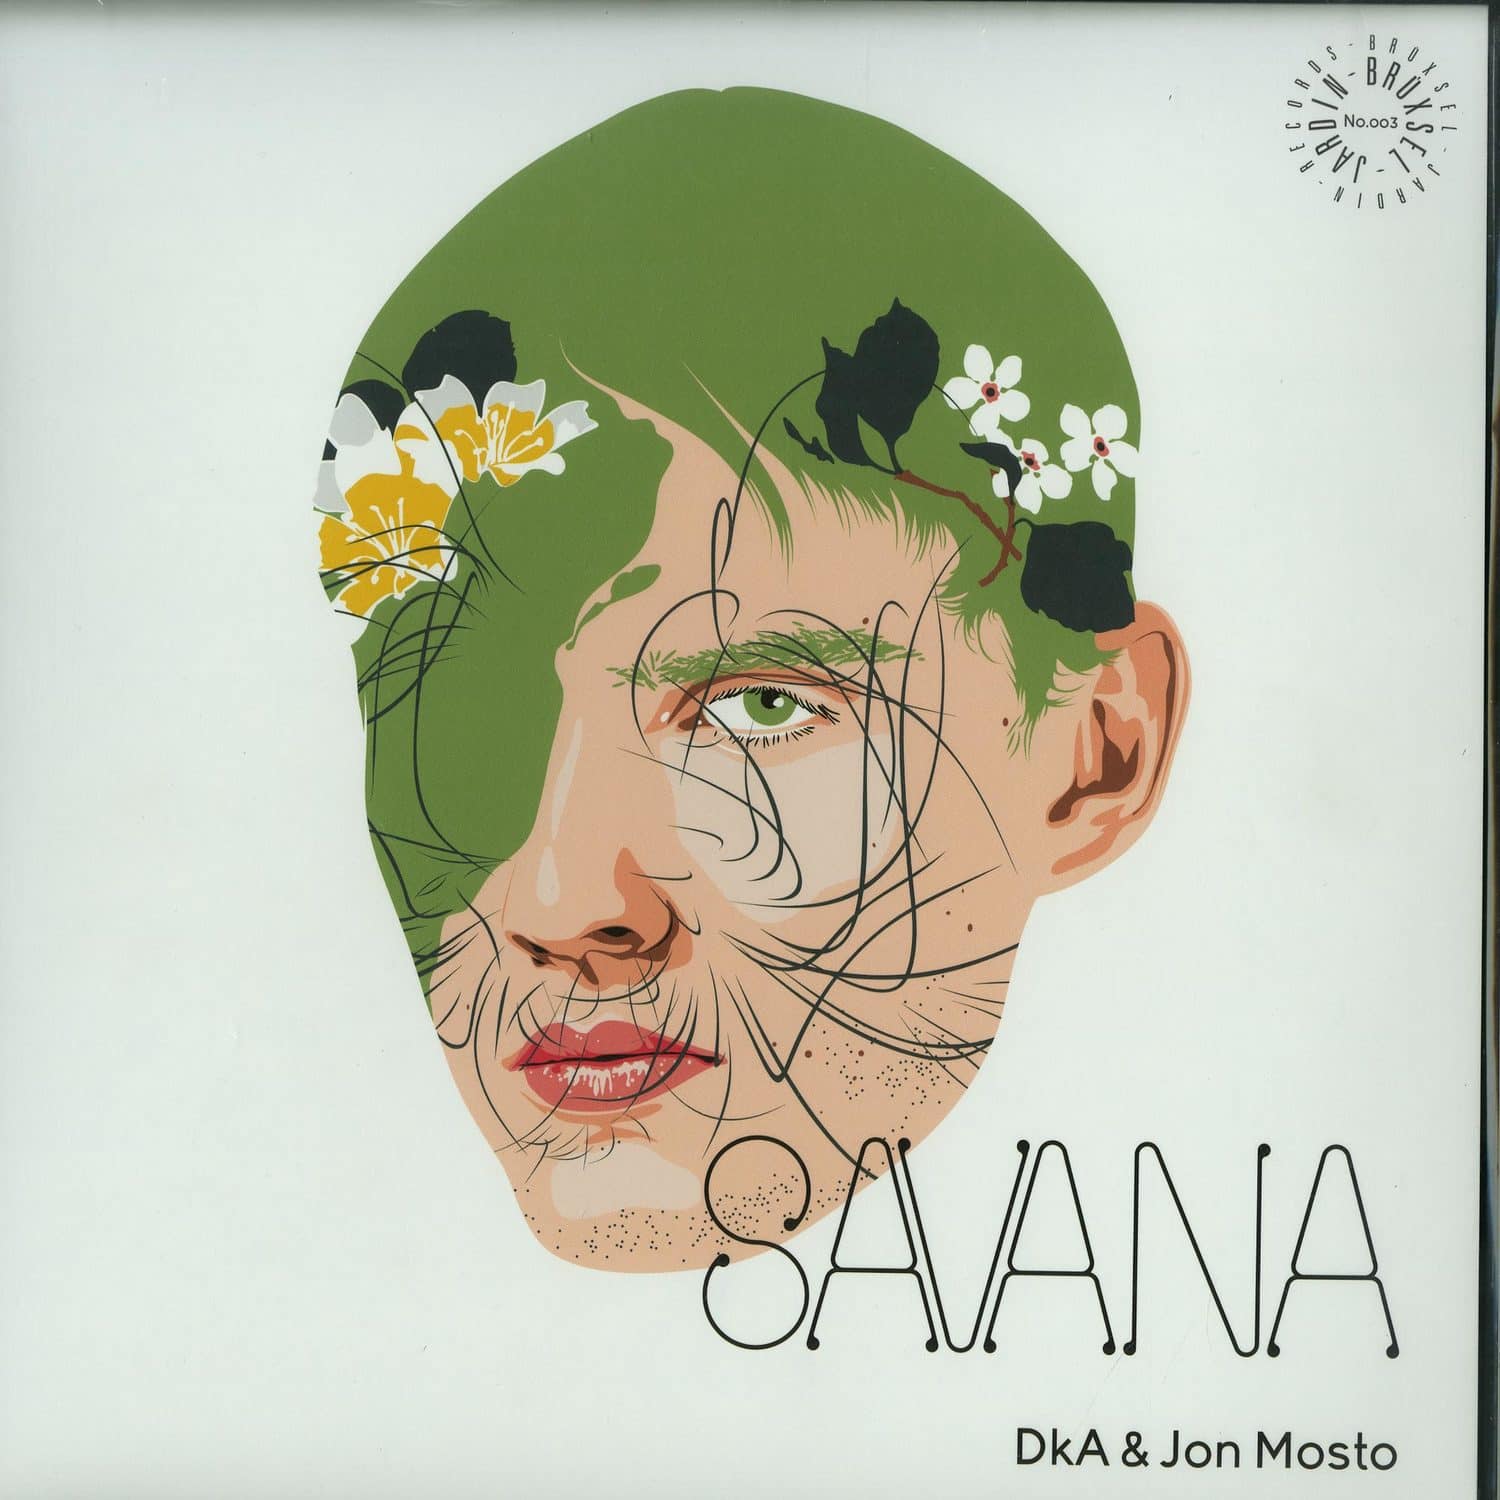 Dka & Jon Mosto - SAVANA EP